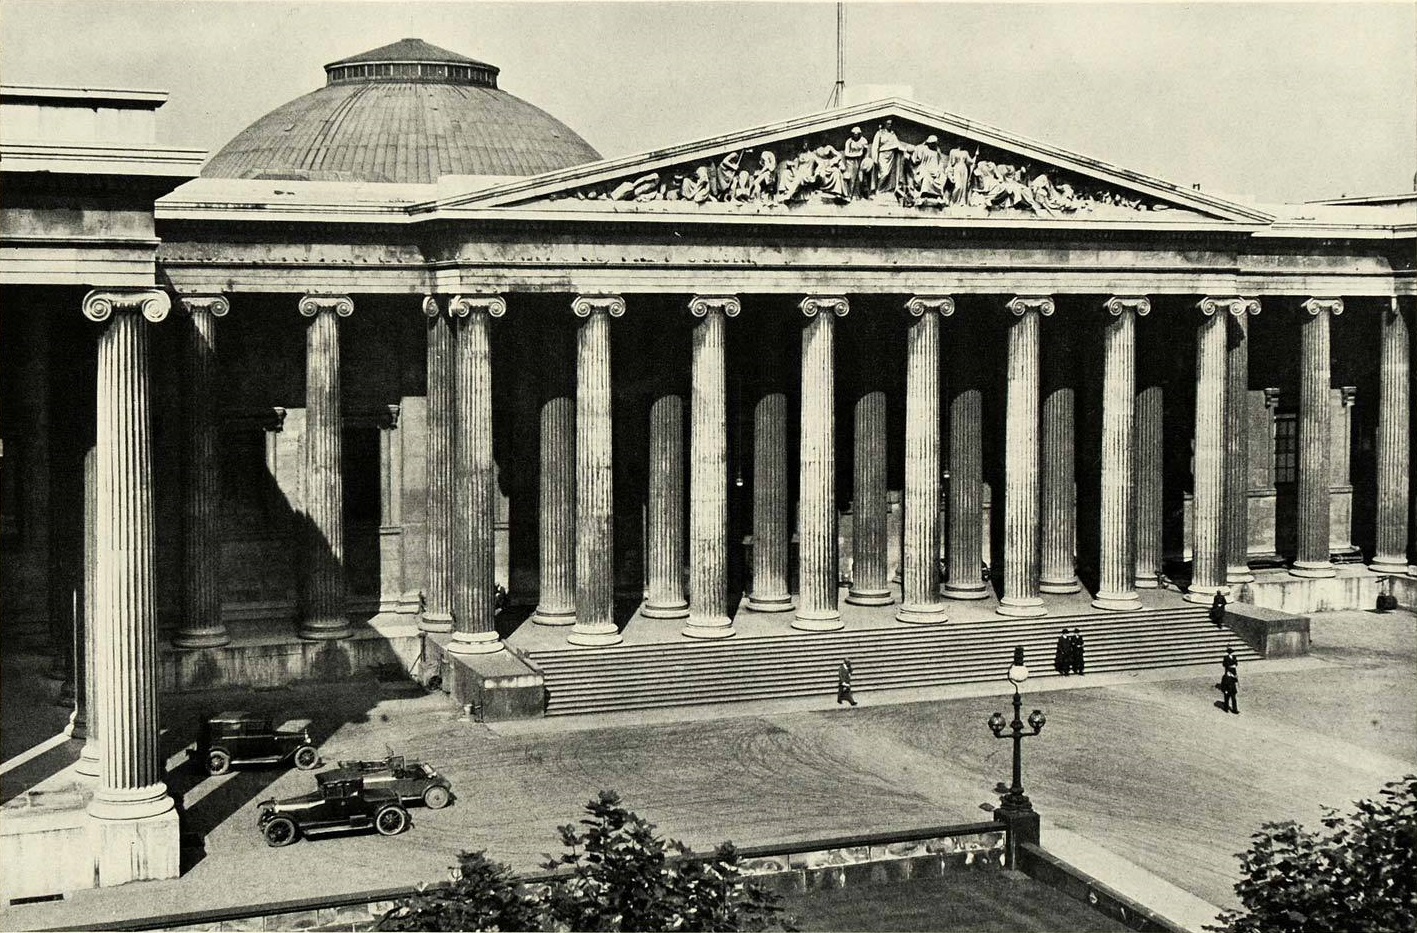 تم تأسيس المتحف بقرار من البرلمان البريطاني عام 1753 وافتتح للجمهور عام 1759